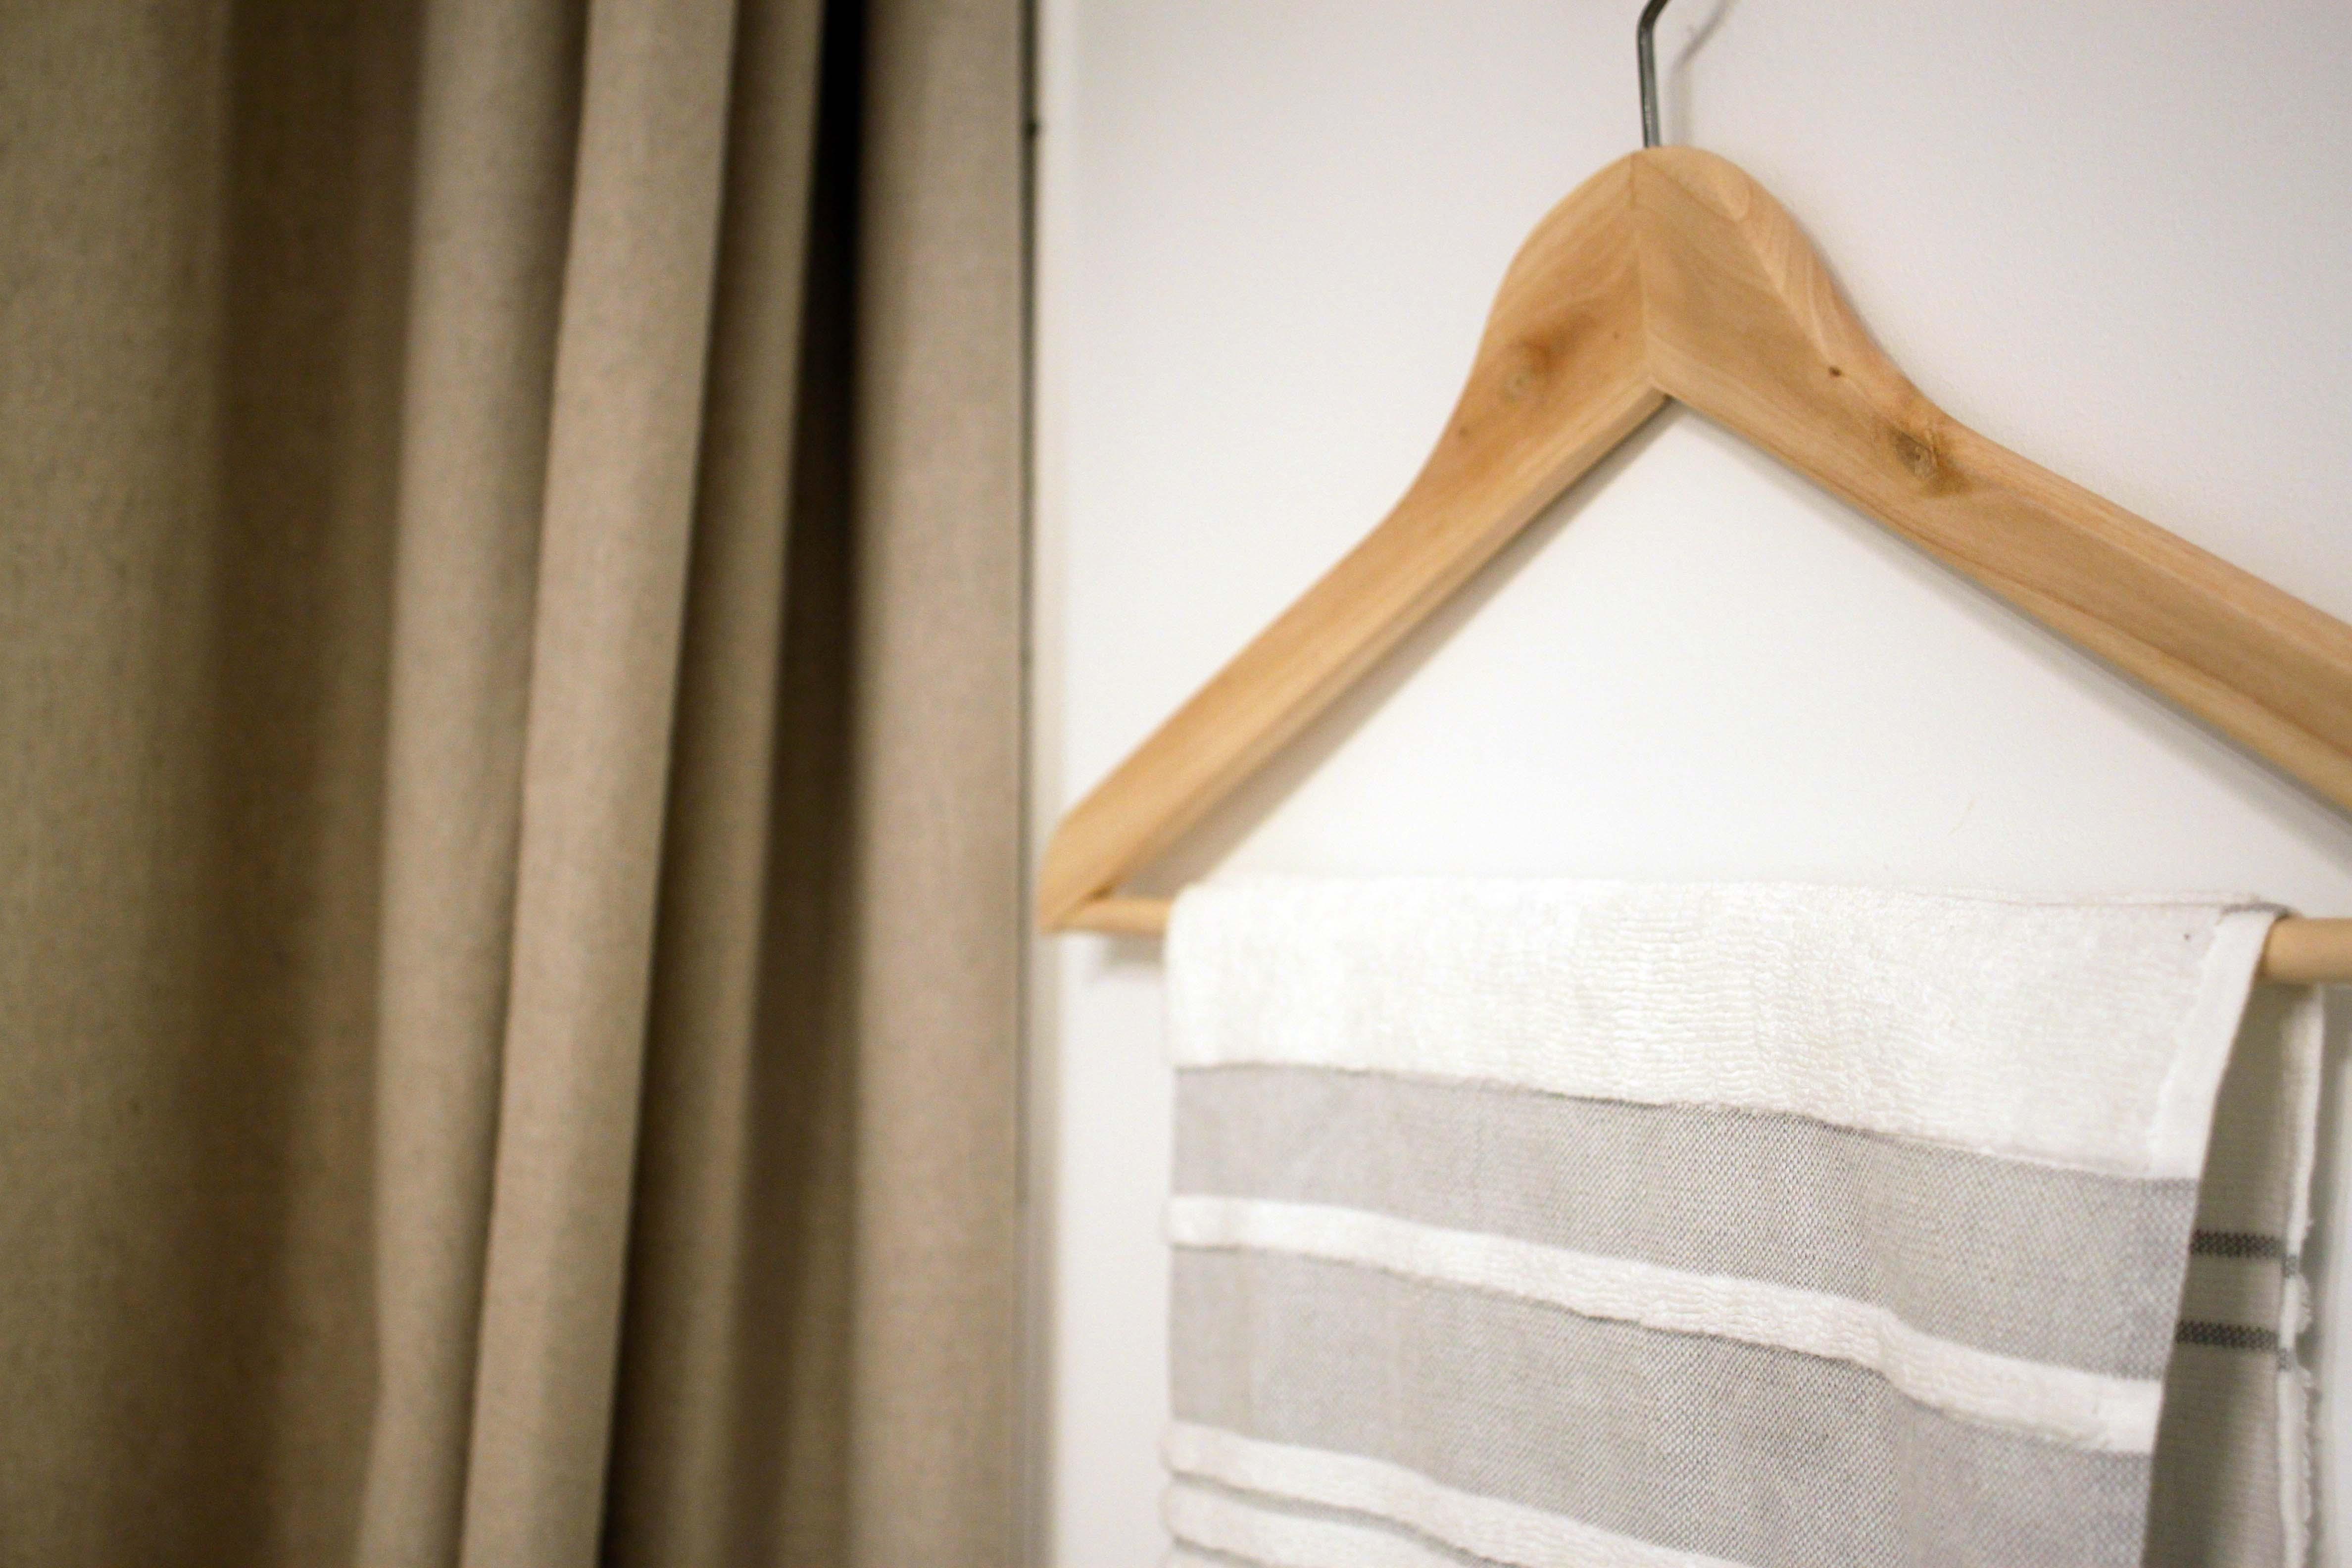 Duschvorhang aus Leinen und Idee für Handtuchhalter #couchstyle #handtuchaufbewahrung